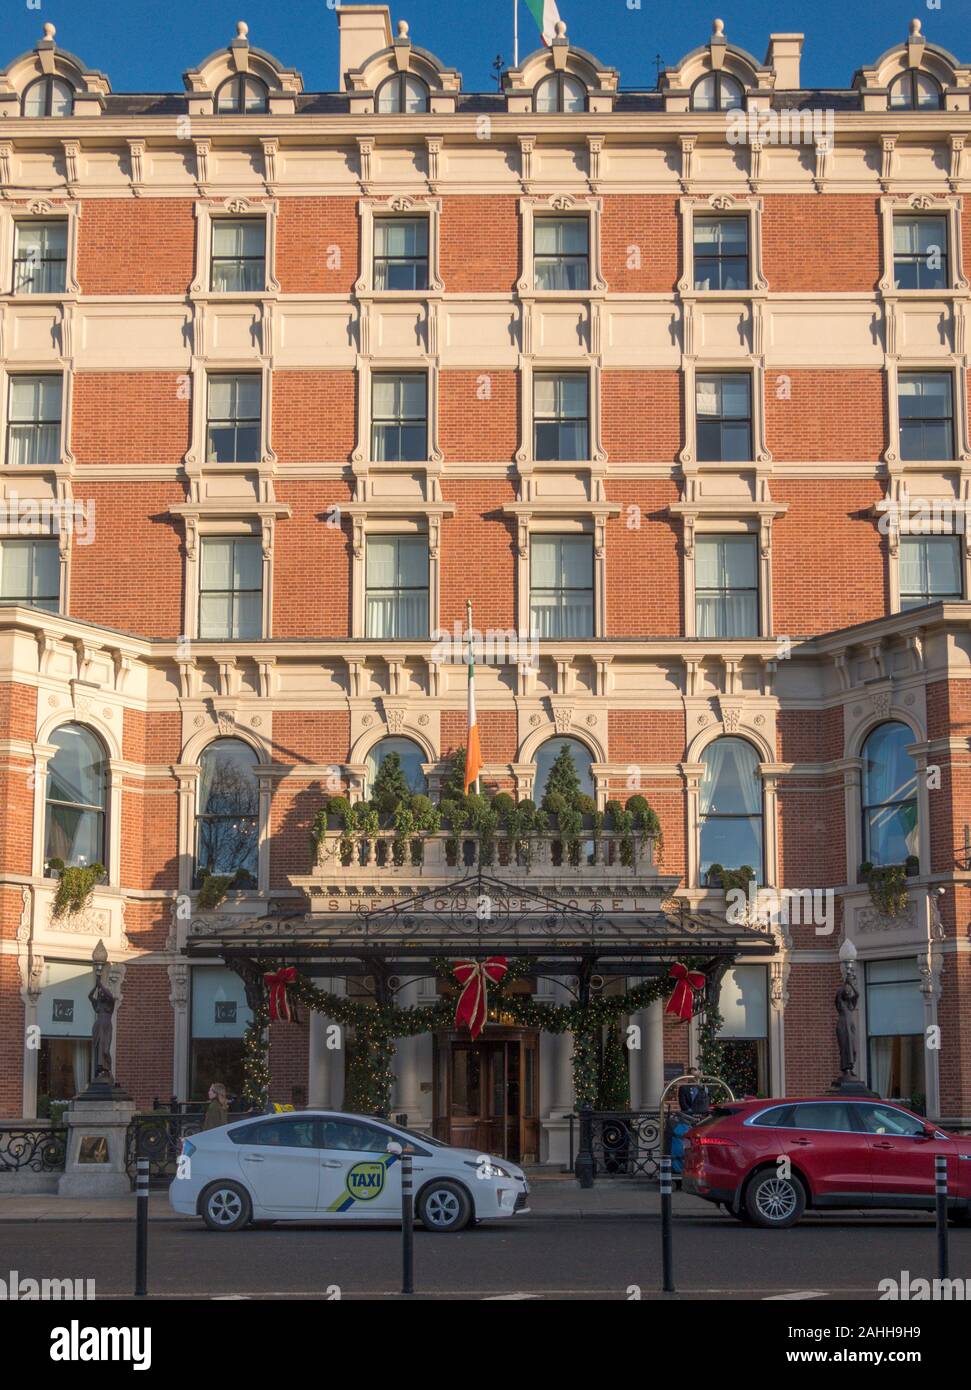 El Shelbourne Hotel, un famoso hotel situado en un edificio histórico en el lado norte de St Stephen's Green, en Dublín, Irlanda. Foto de stock